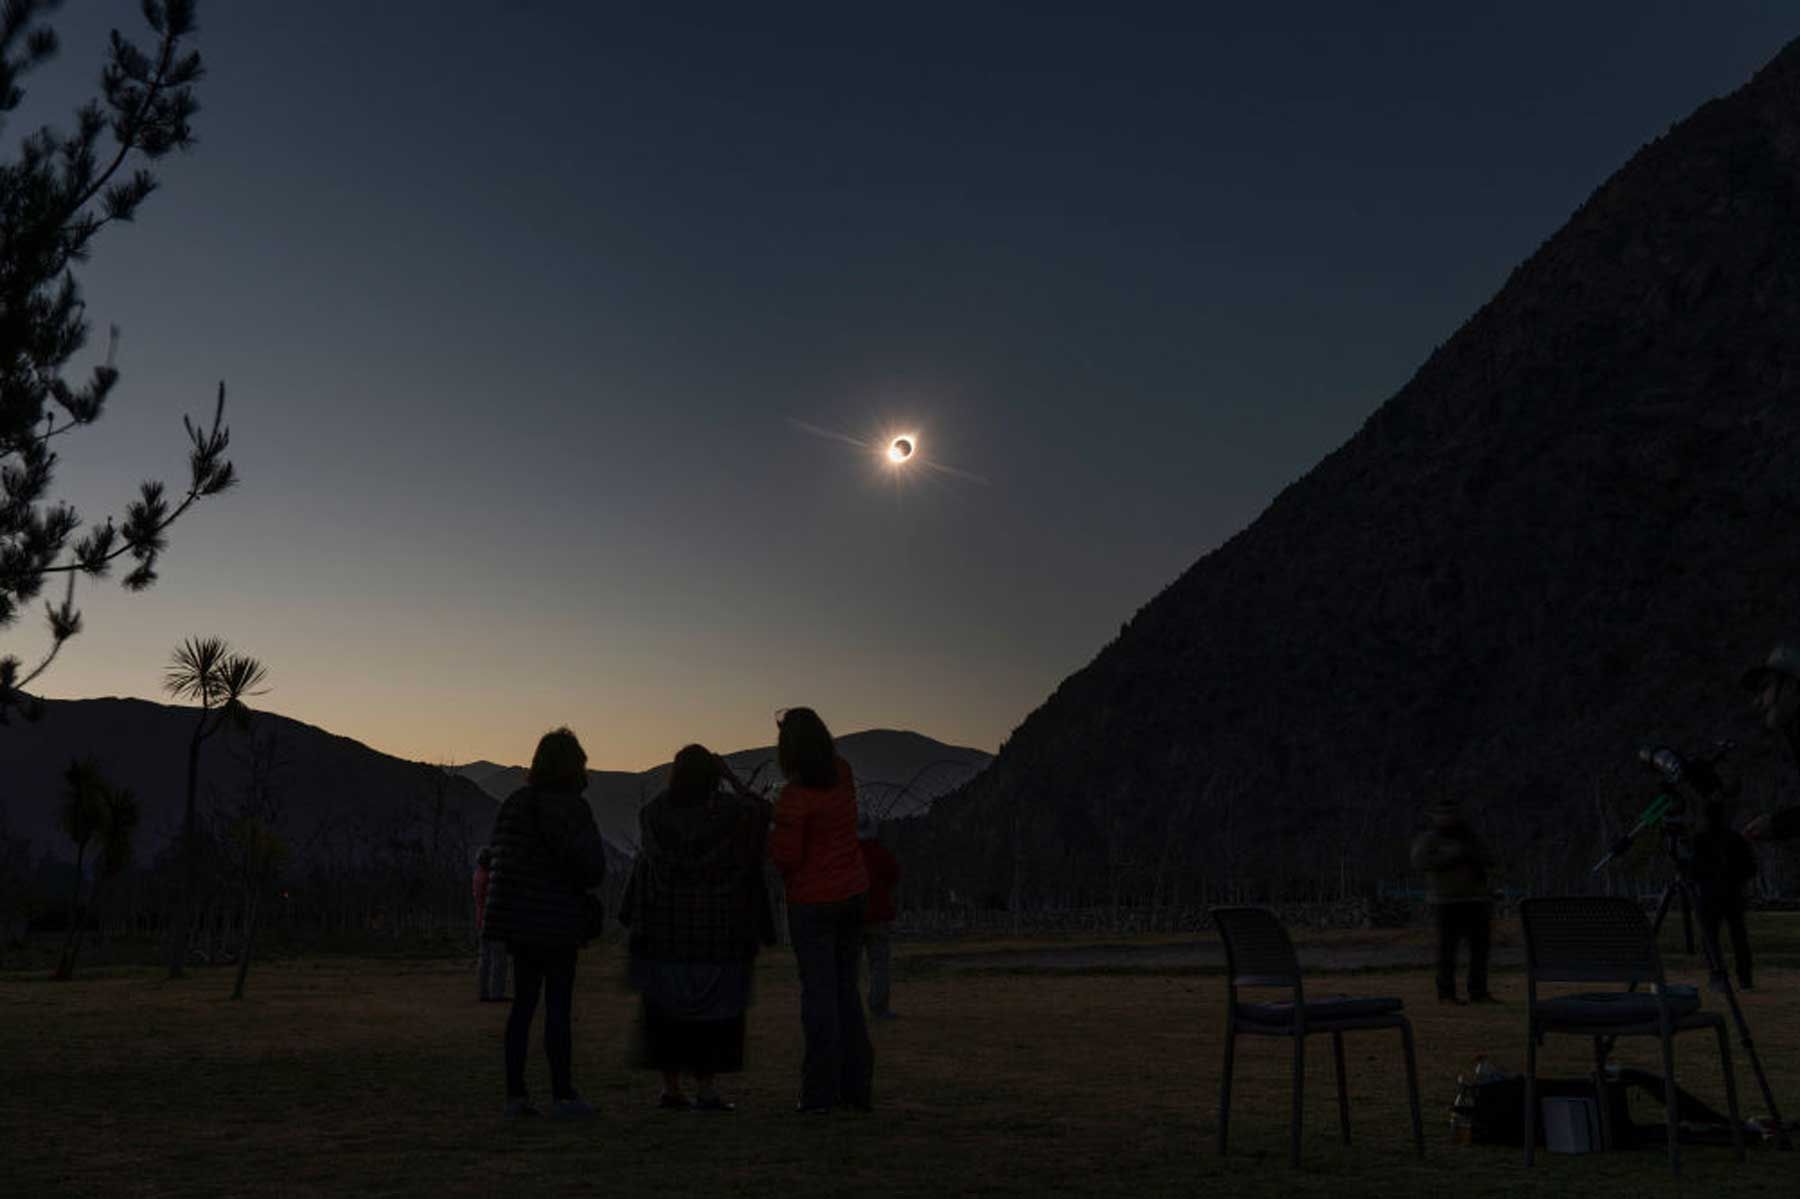 Bidh a ’ghrian a’ nochdadh bho chùl na gealaich mar a bhios daoine a ’coimhead an eclipse grèine iomlan bho El Molle, Chile, air 2 Iuchar, 2019.